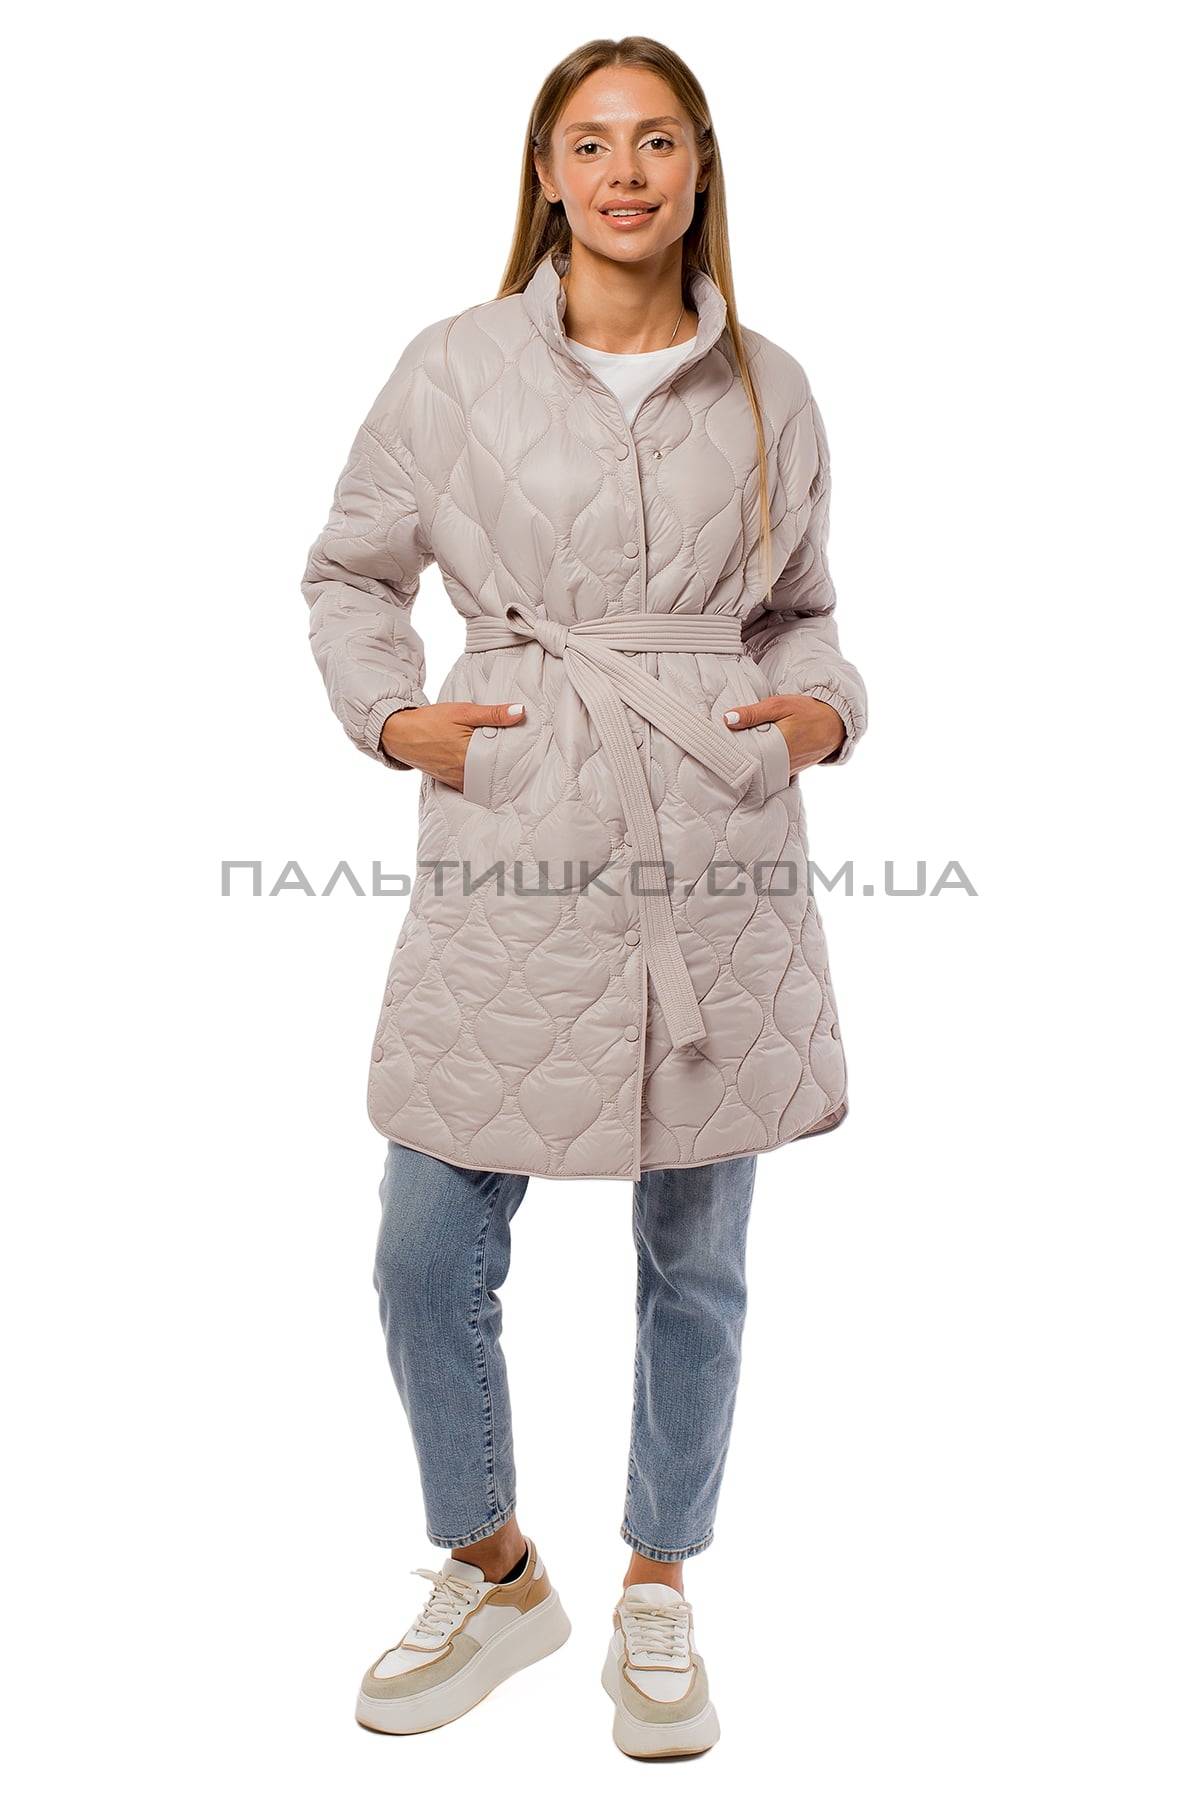  Женкская зимняя куртка серая